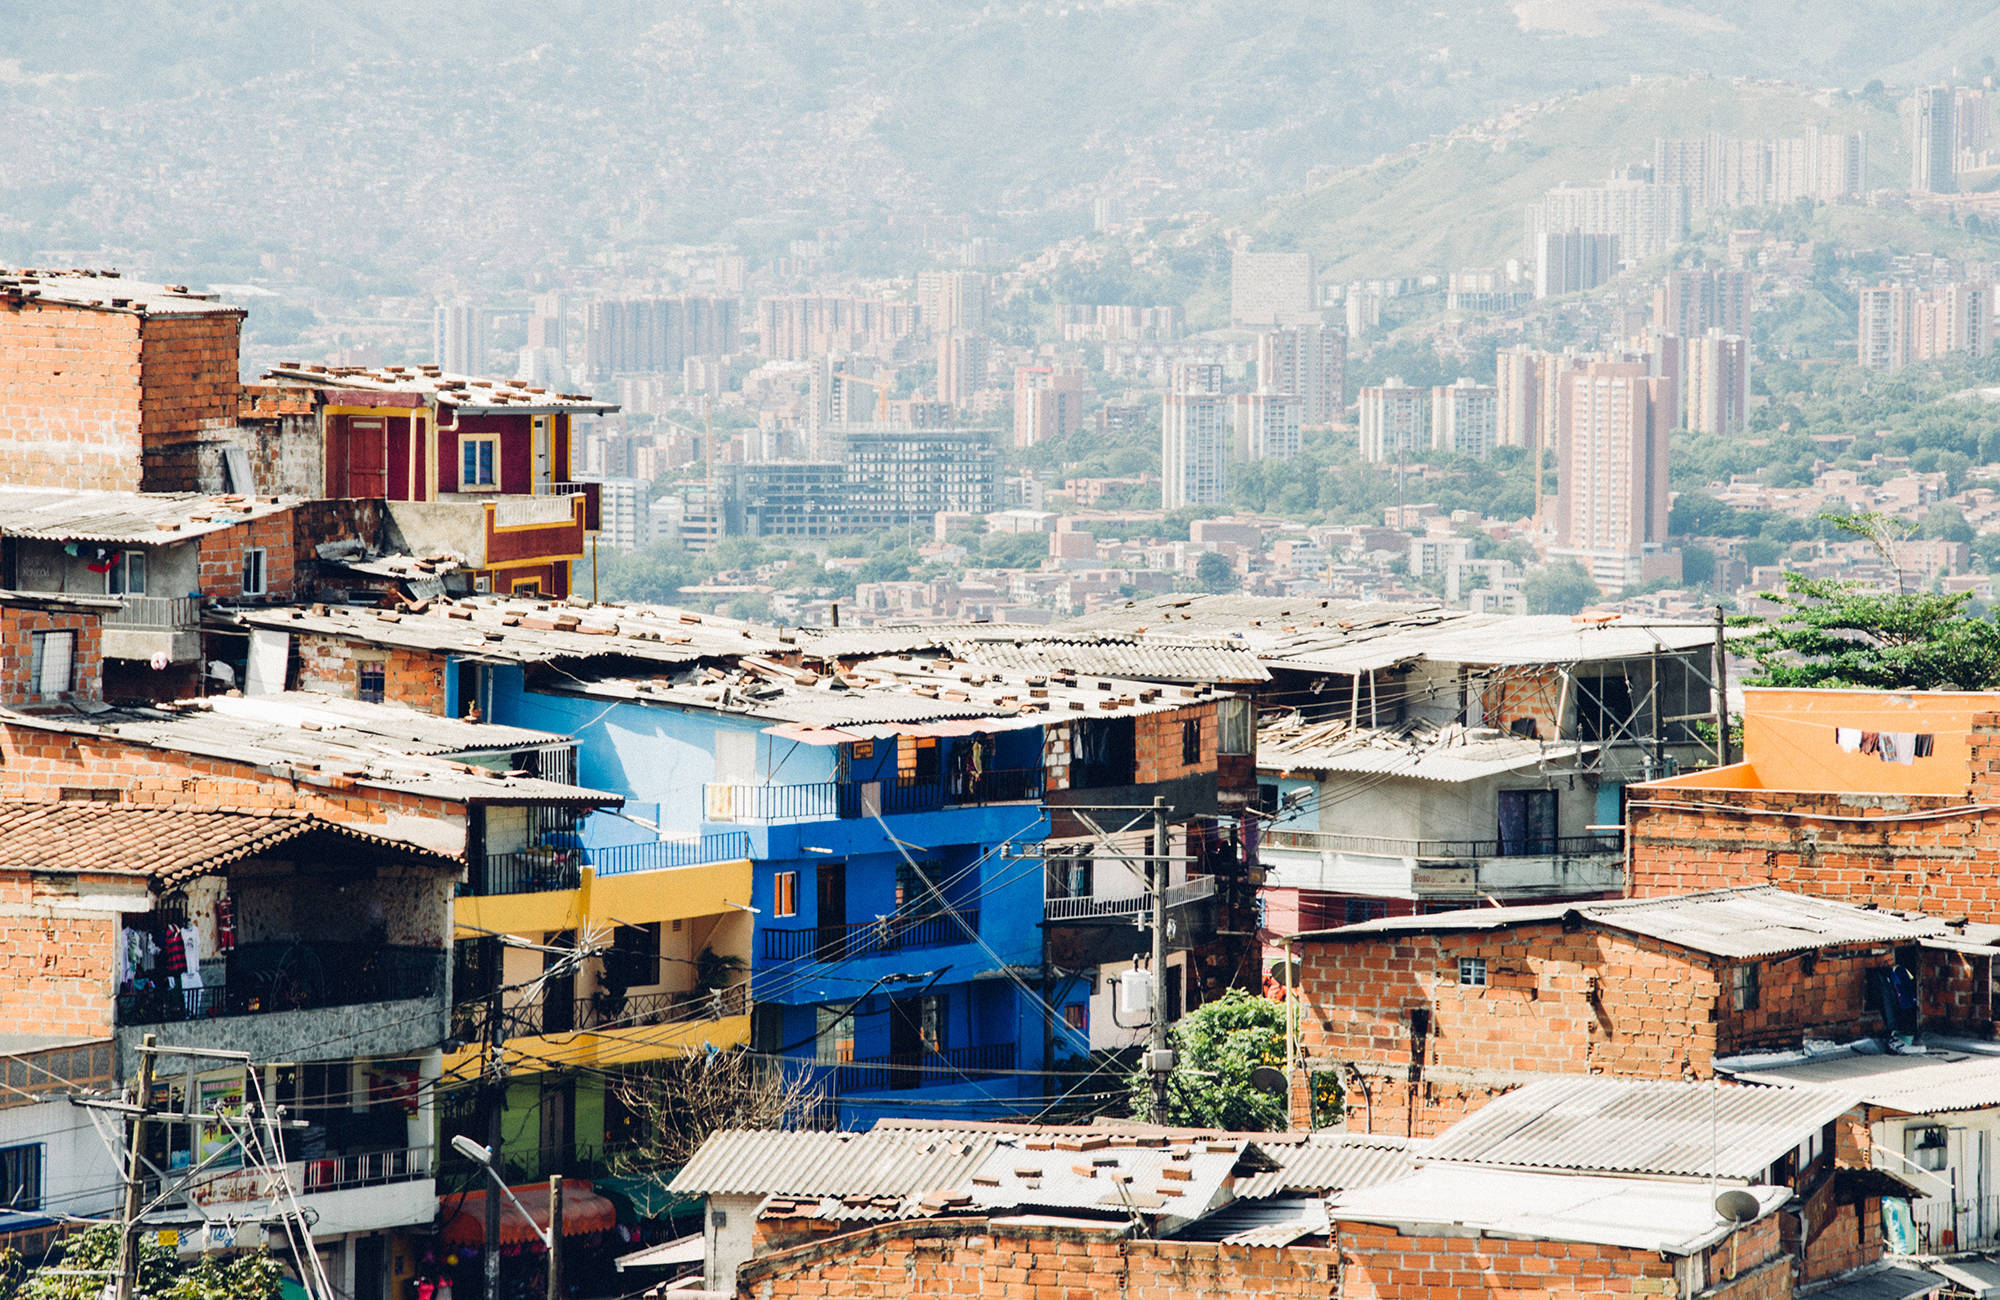 Uitkijk over de stad Medellin in Colombia | Beste reistijd maart | Beste bestemmingen maart | Reiskalender | KILROY